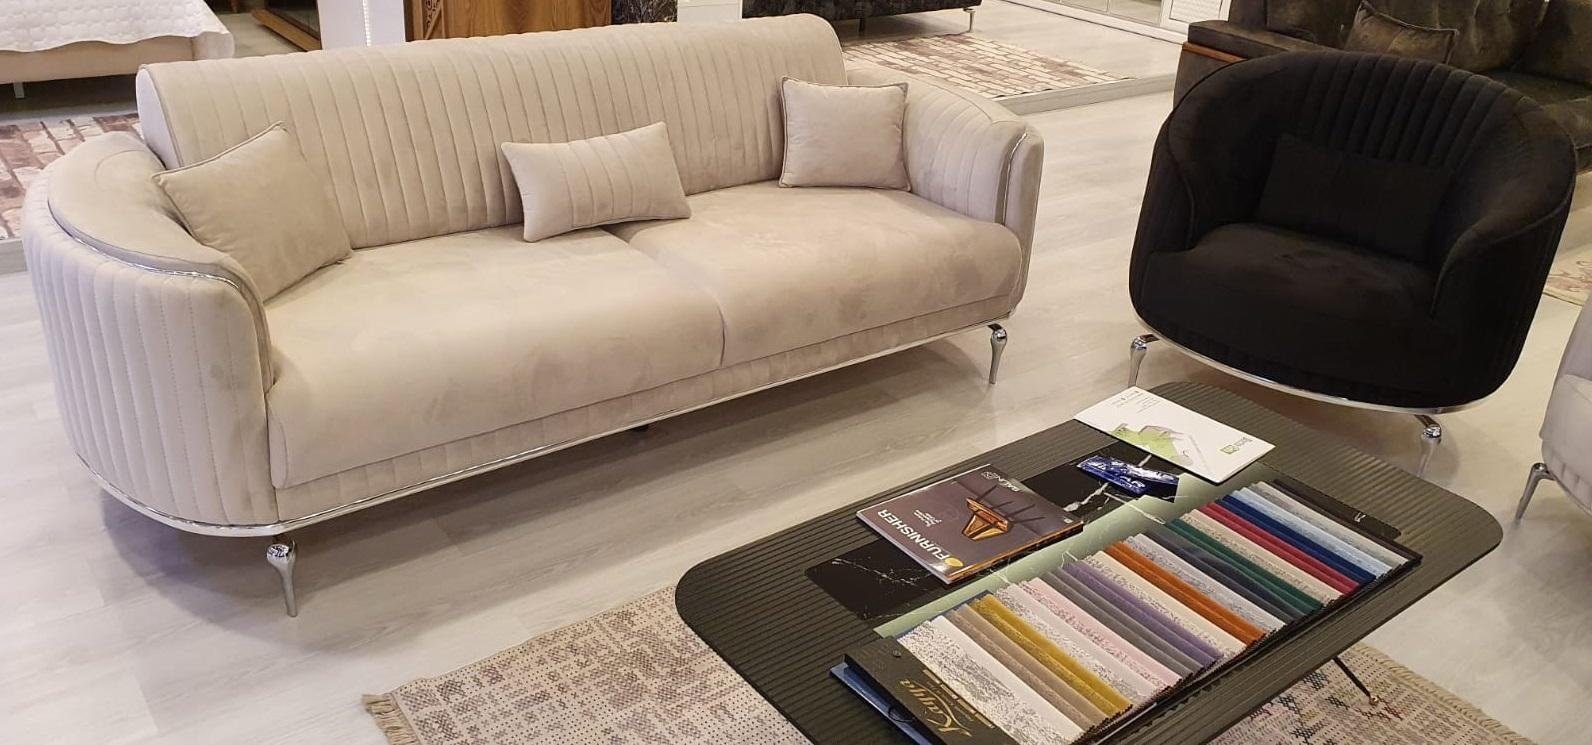 JVmoebel Schwarz Polster Luxus Design Sessel Wohnzimmer Textil Couch Sitz Neu Sessel